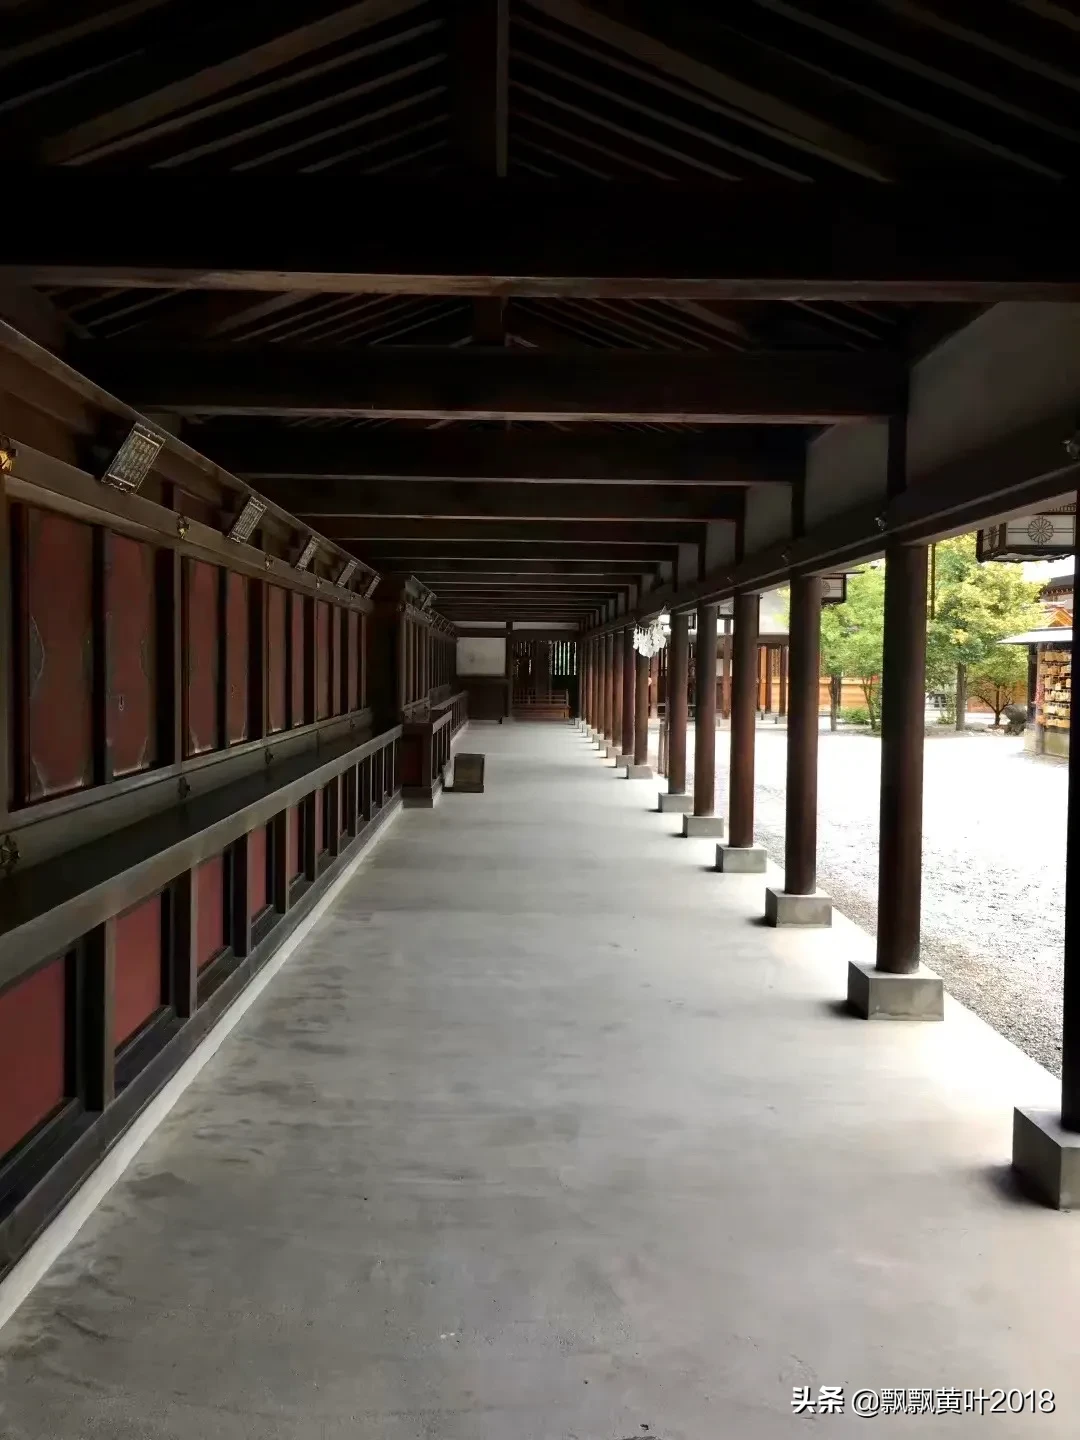 漫游日本——秩父神社